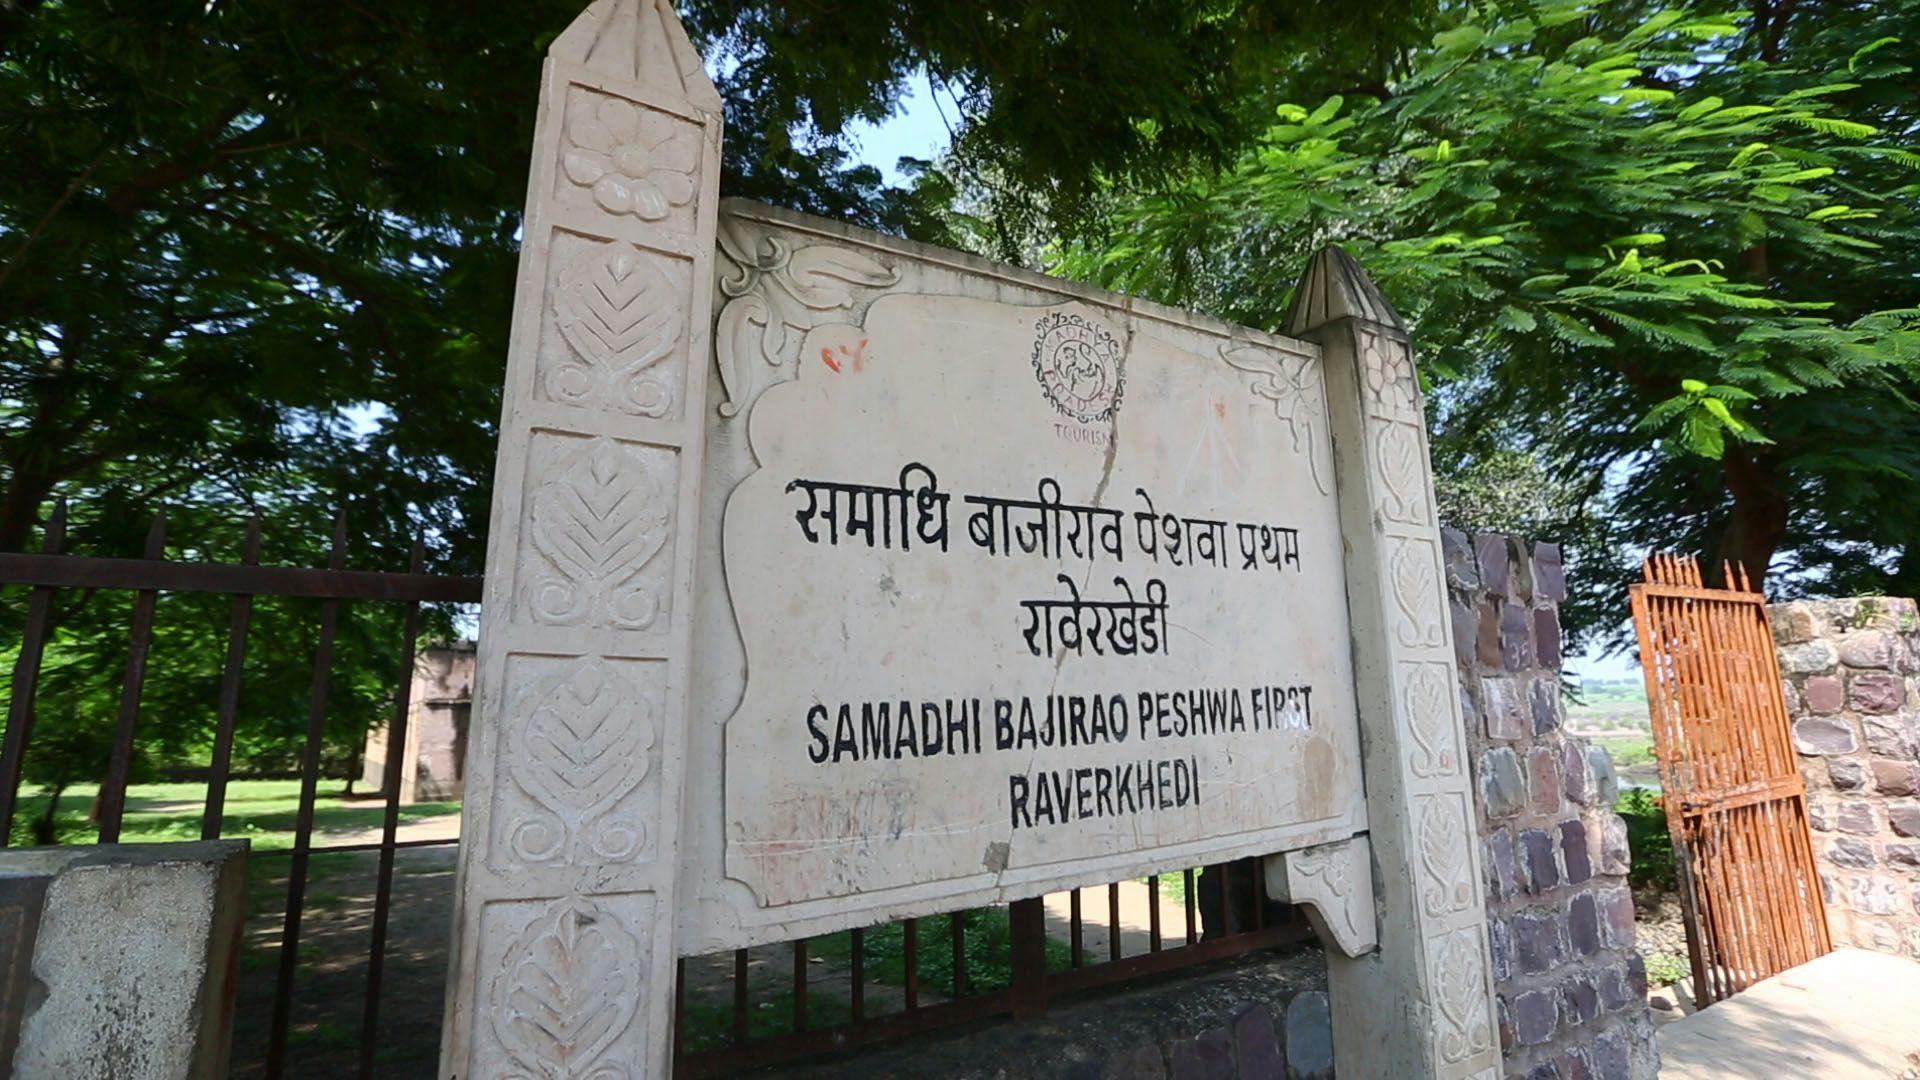 The entrance to the samadhi at Raverkhedi